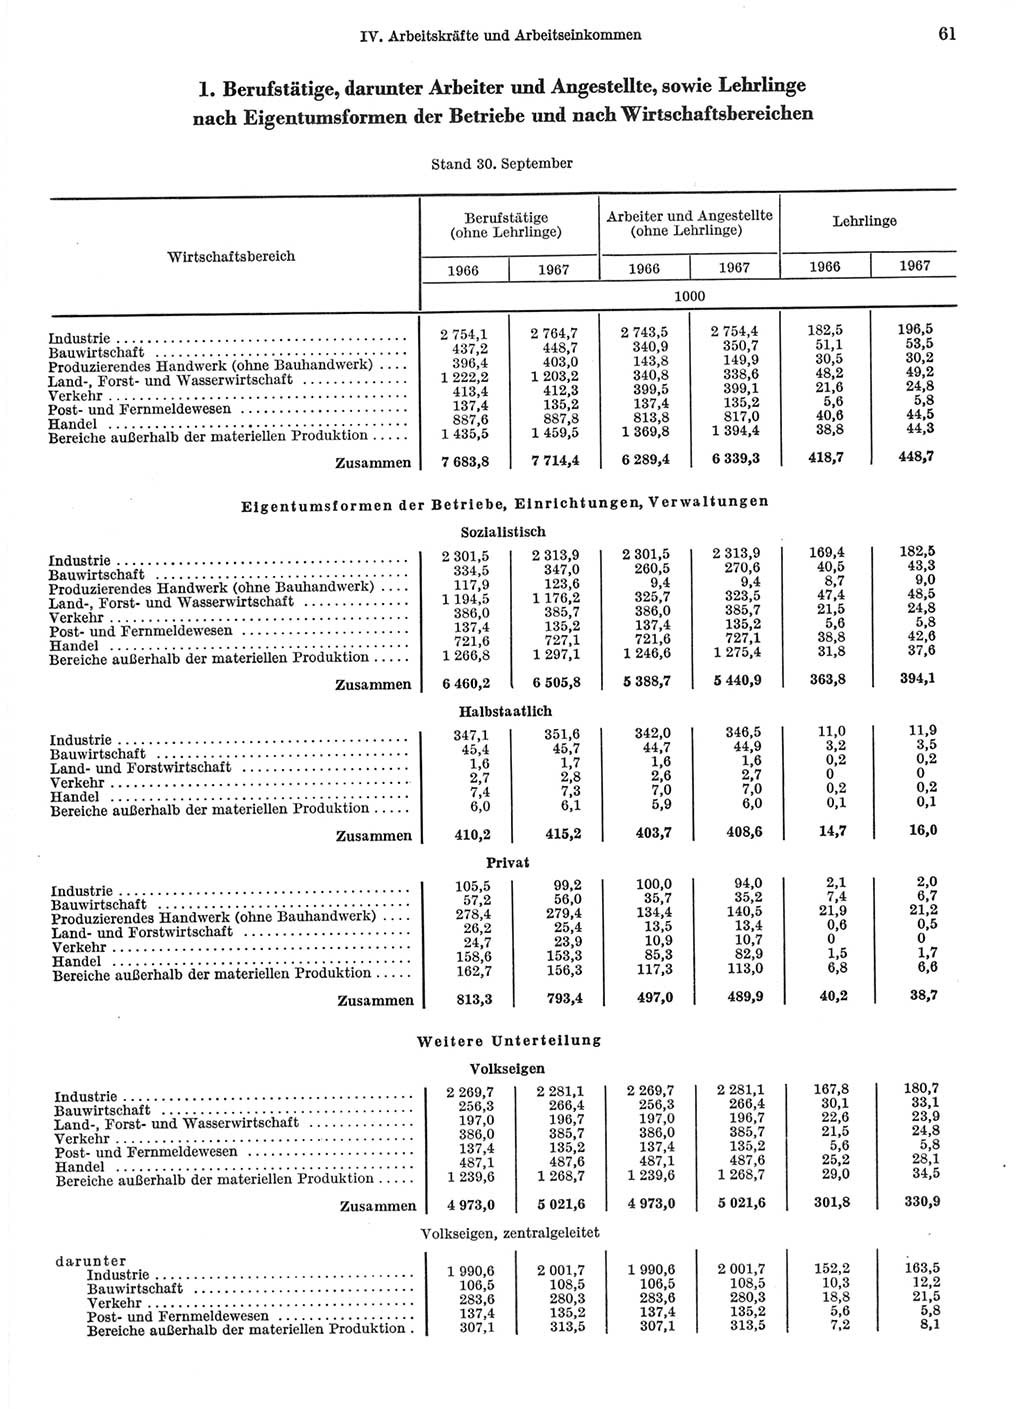 Statistisches Jahrbuch der Deutschen Demokratischen Republik (DDR) 1968, Seite 61 (Stat. Jb. DDR 1968, S. 61)